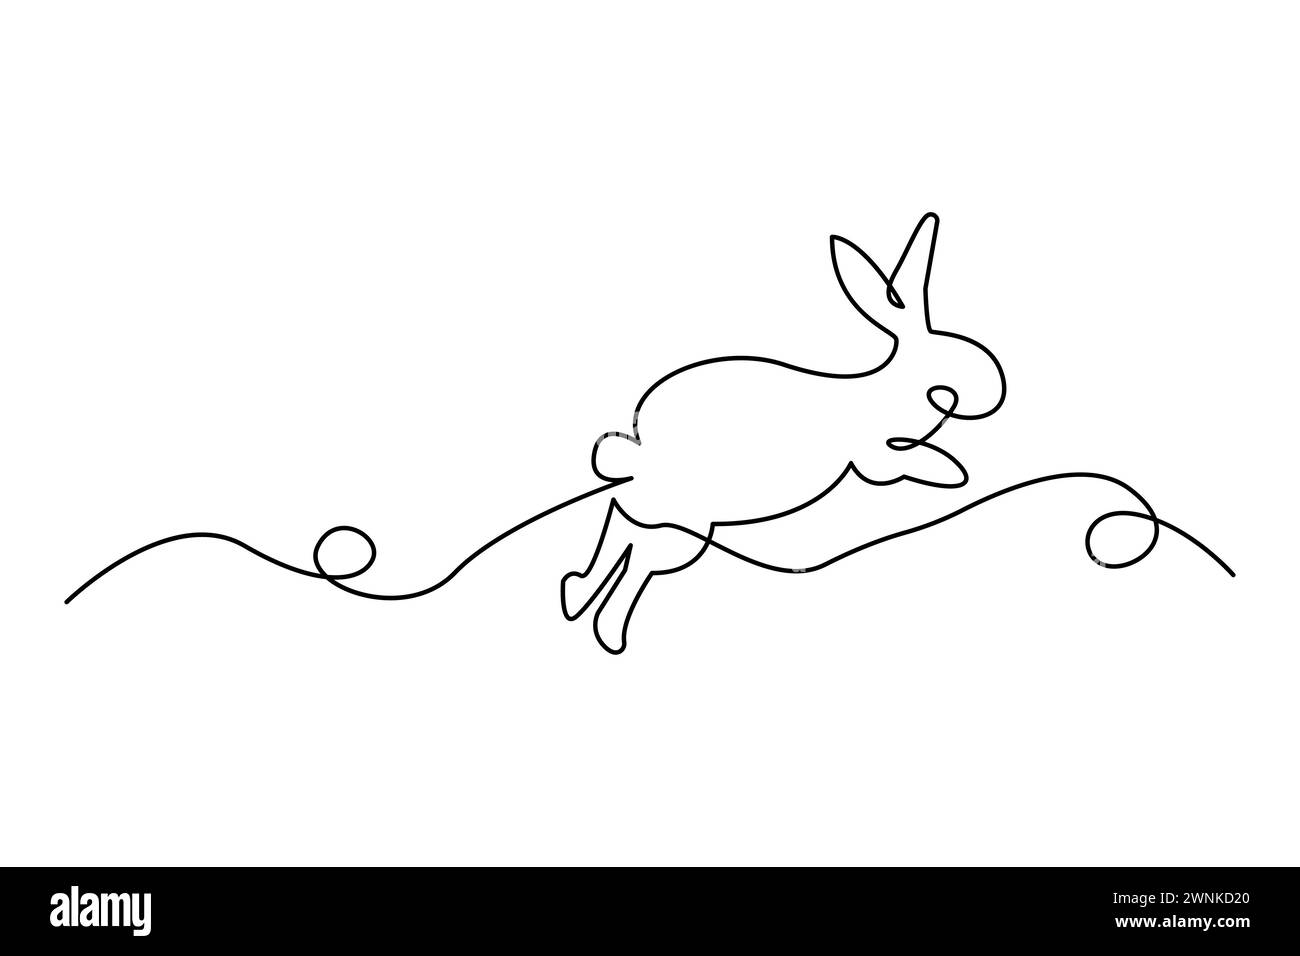 Minimalistische Einzeilenzeichnung eines springenden Kaninchens. Elegante, durchgehende Strichkunst. Vektorabbildung. EPS 10. Stock Vektor